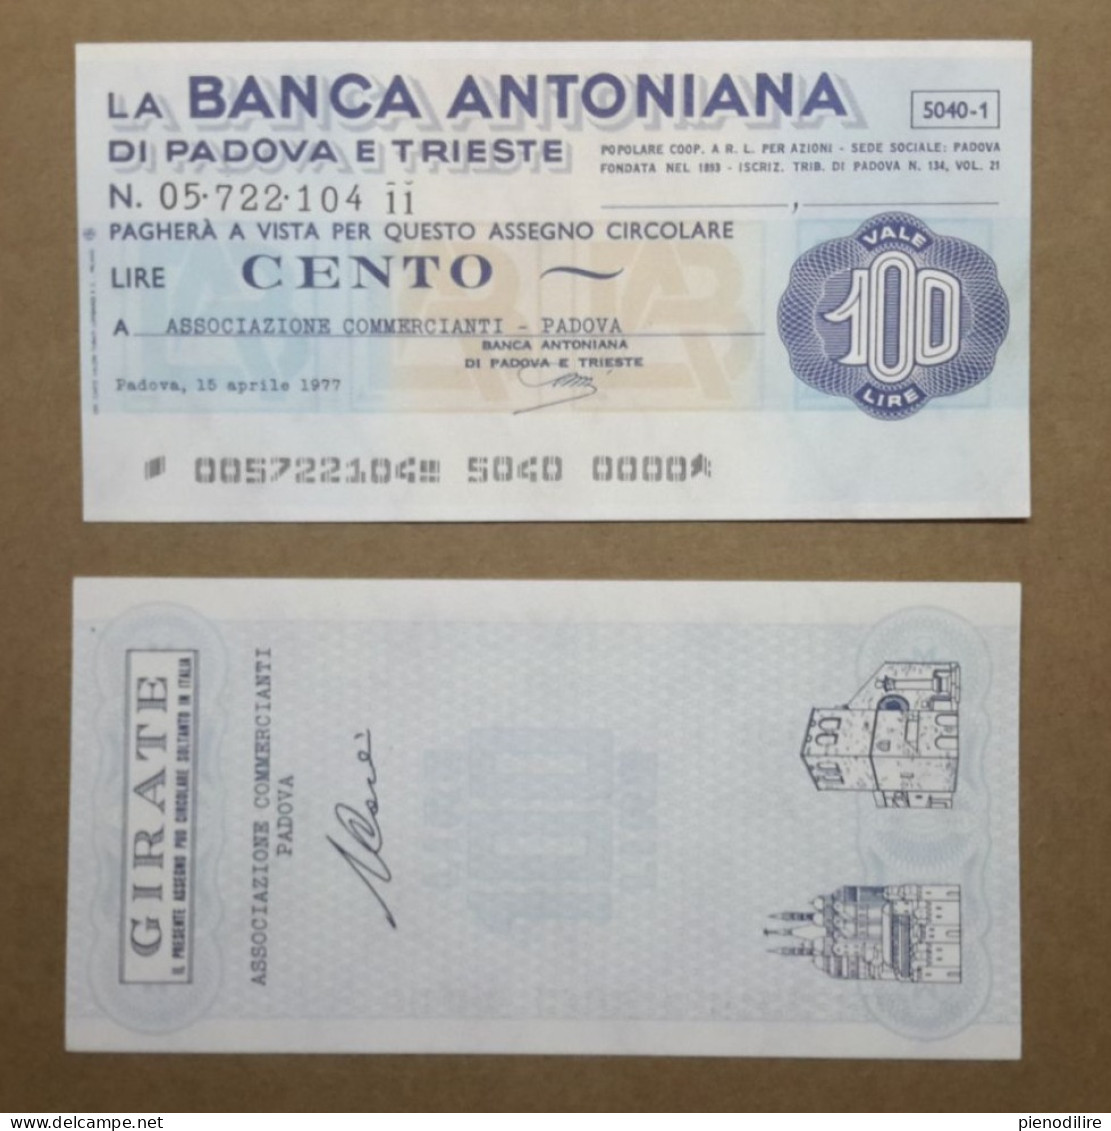 BANCA ANTONIANA DI PADOVA E TRIESTE, 100 Lire 15.04.1977 ASSOCIAZIONE COMMERCIANTI PADOVA (A1.68) - [10] Cheques En Mini-cheques